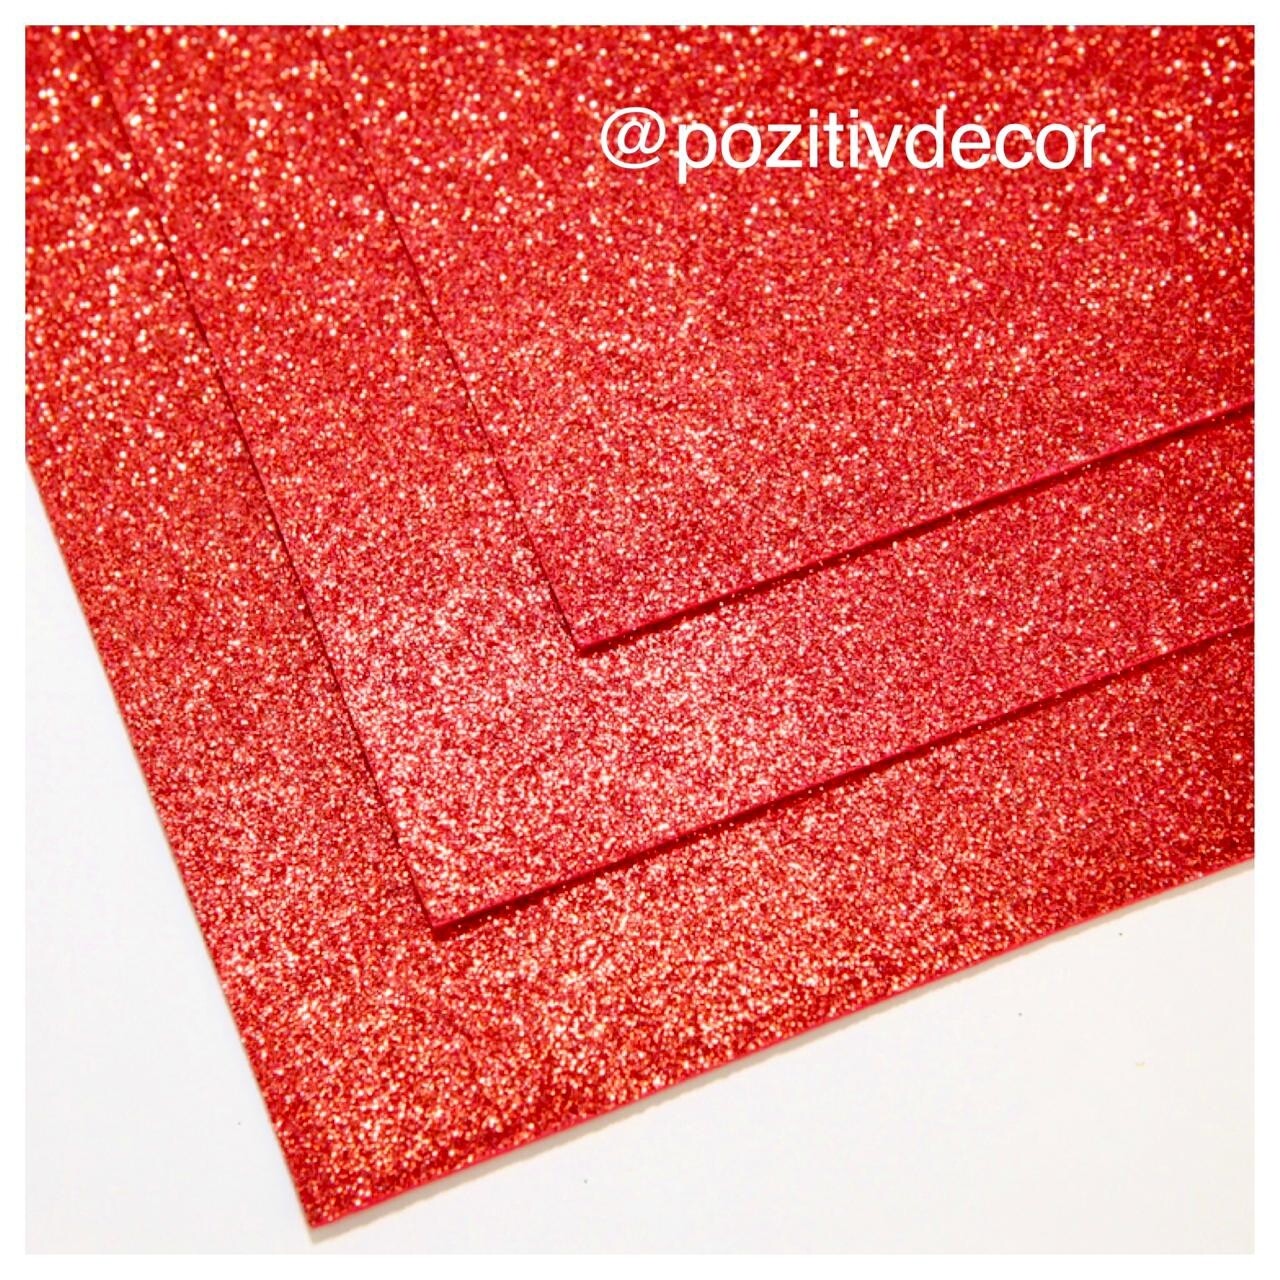 Фоамиран глиттерный - толщина 1,5 мм , размер листа 60/70 см.
Цвет - красный